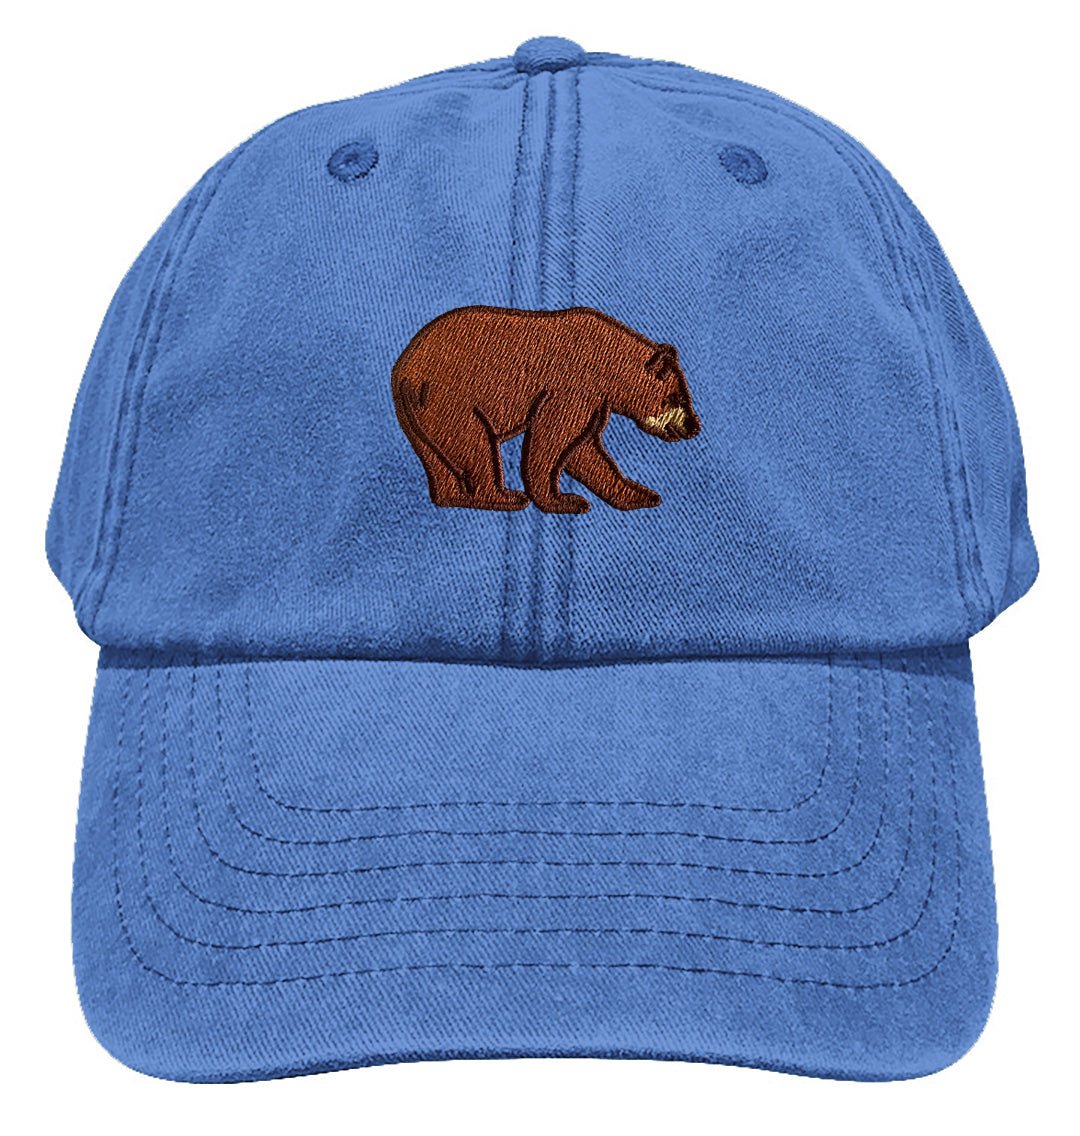 Bear Baseball Cap - Blue Panda